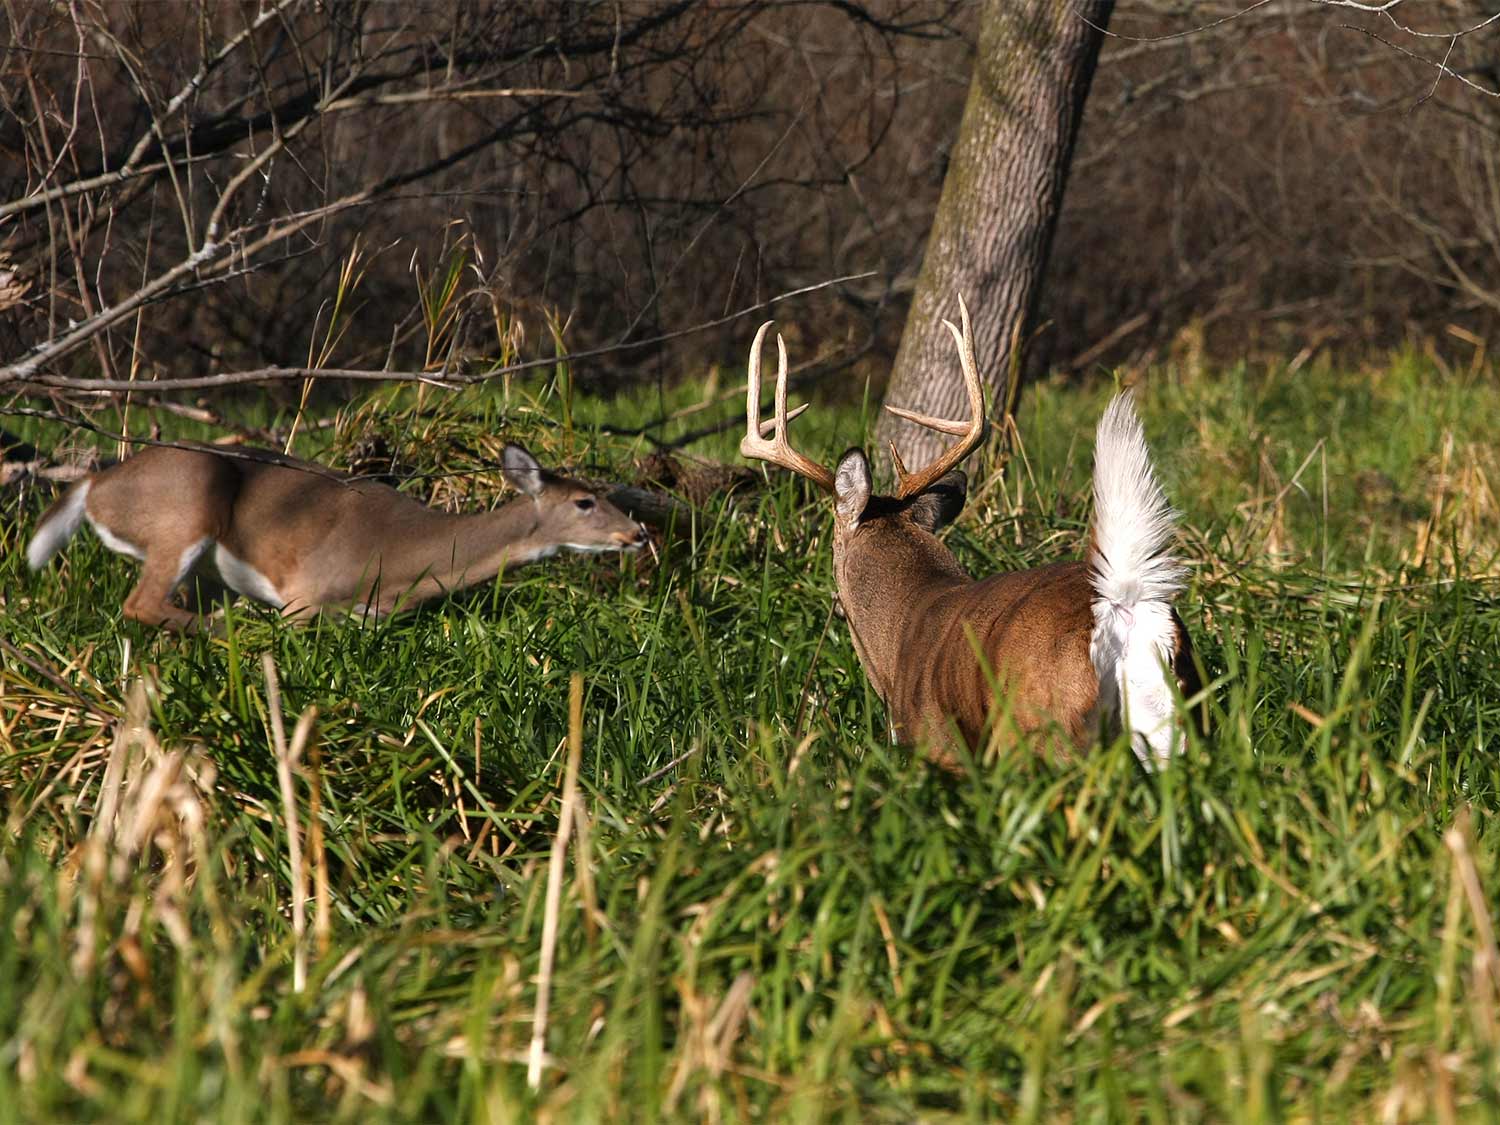 big buck chasing a doe in a field